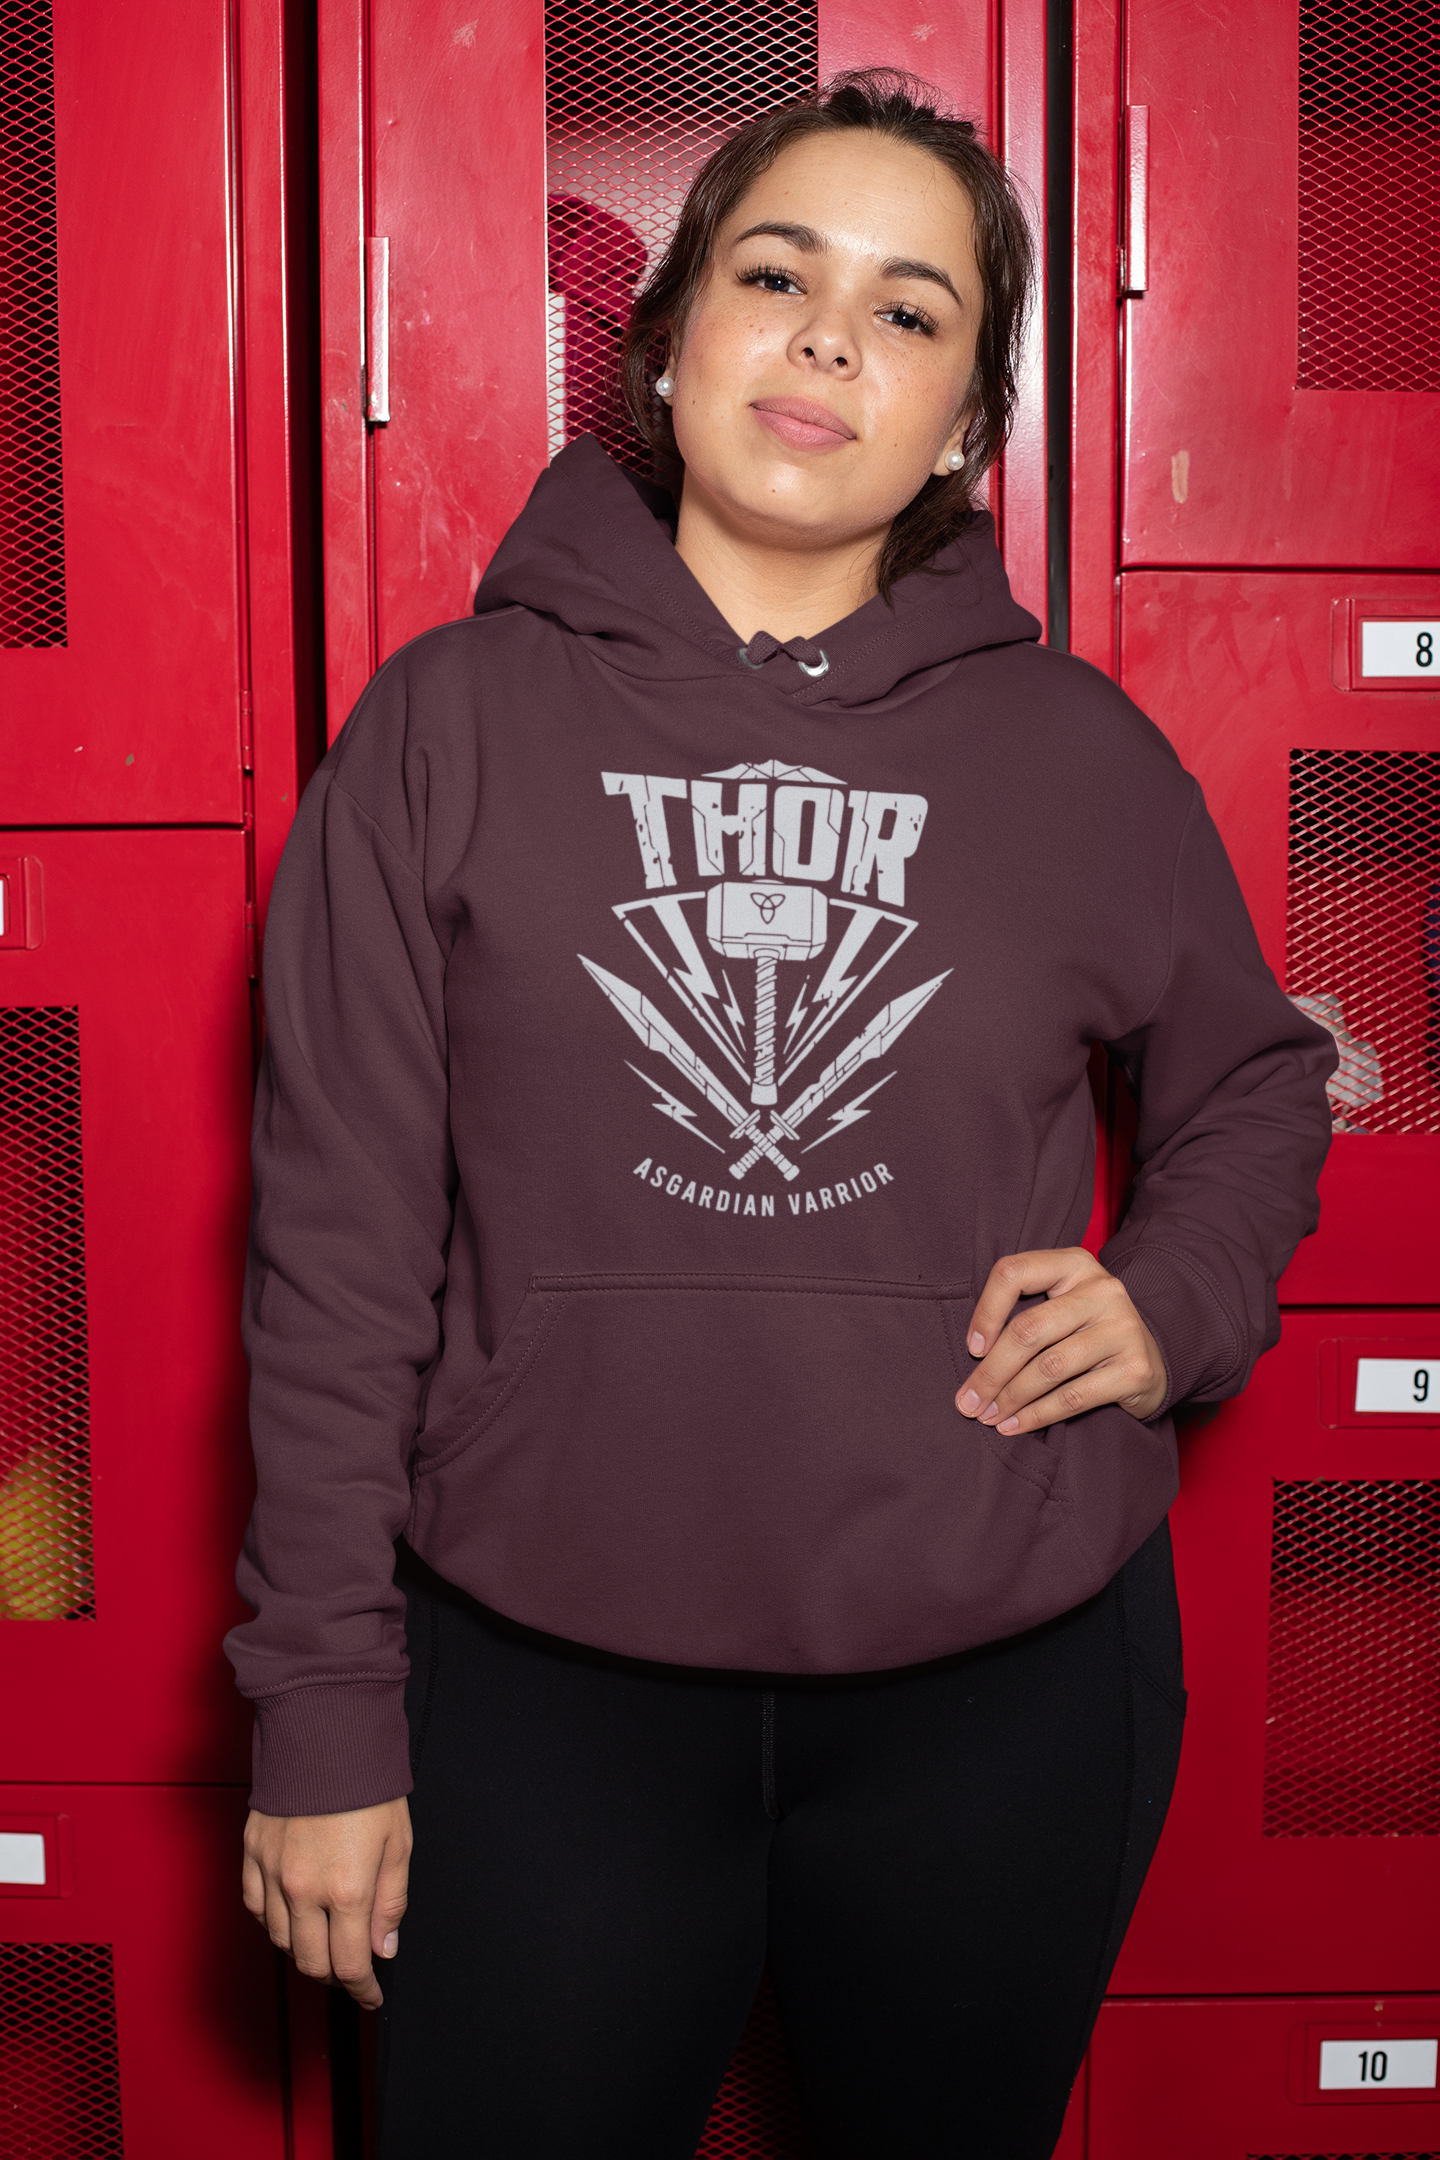 Thor Web Series Hoodies for Women-FunkyTeesClub